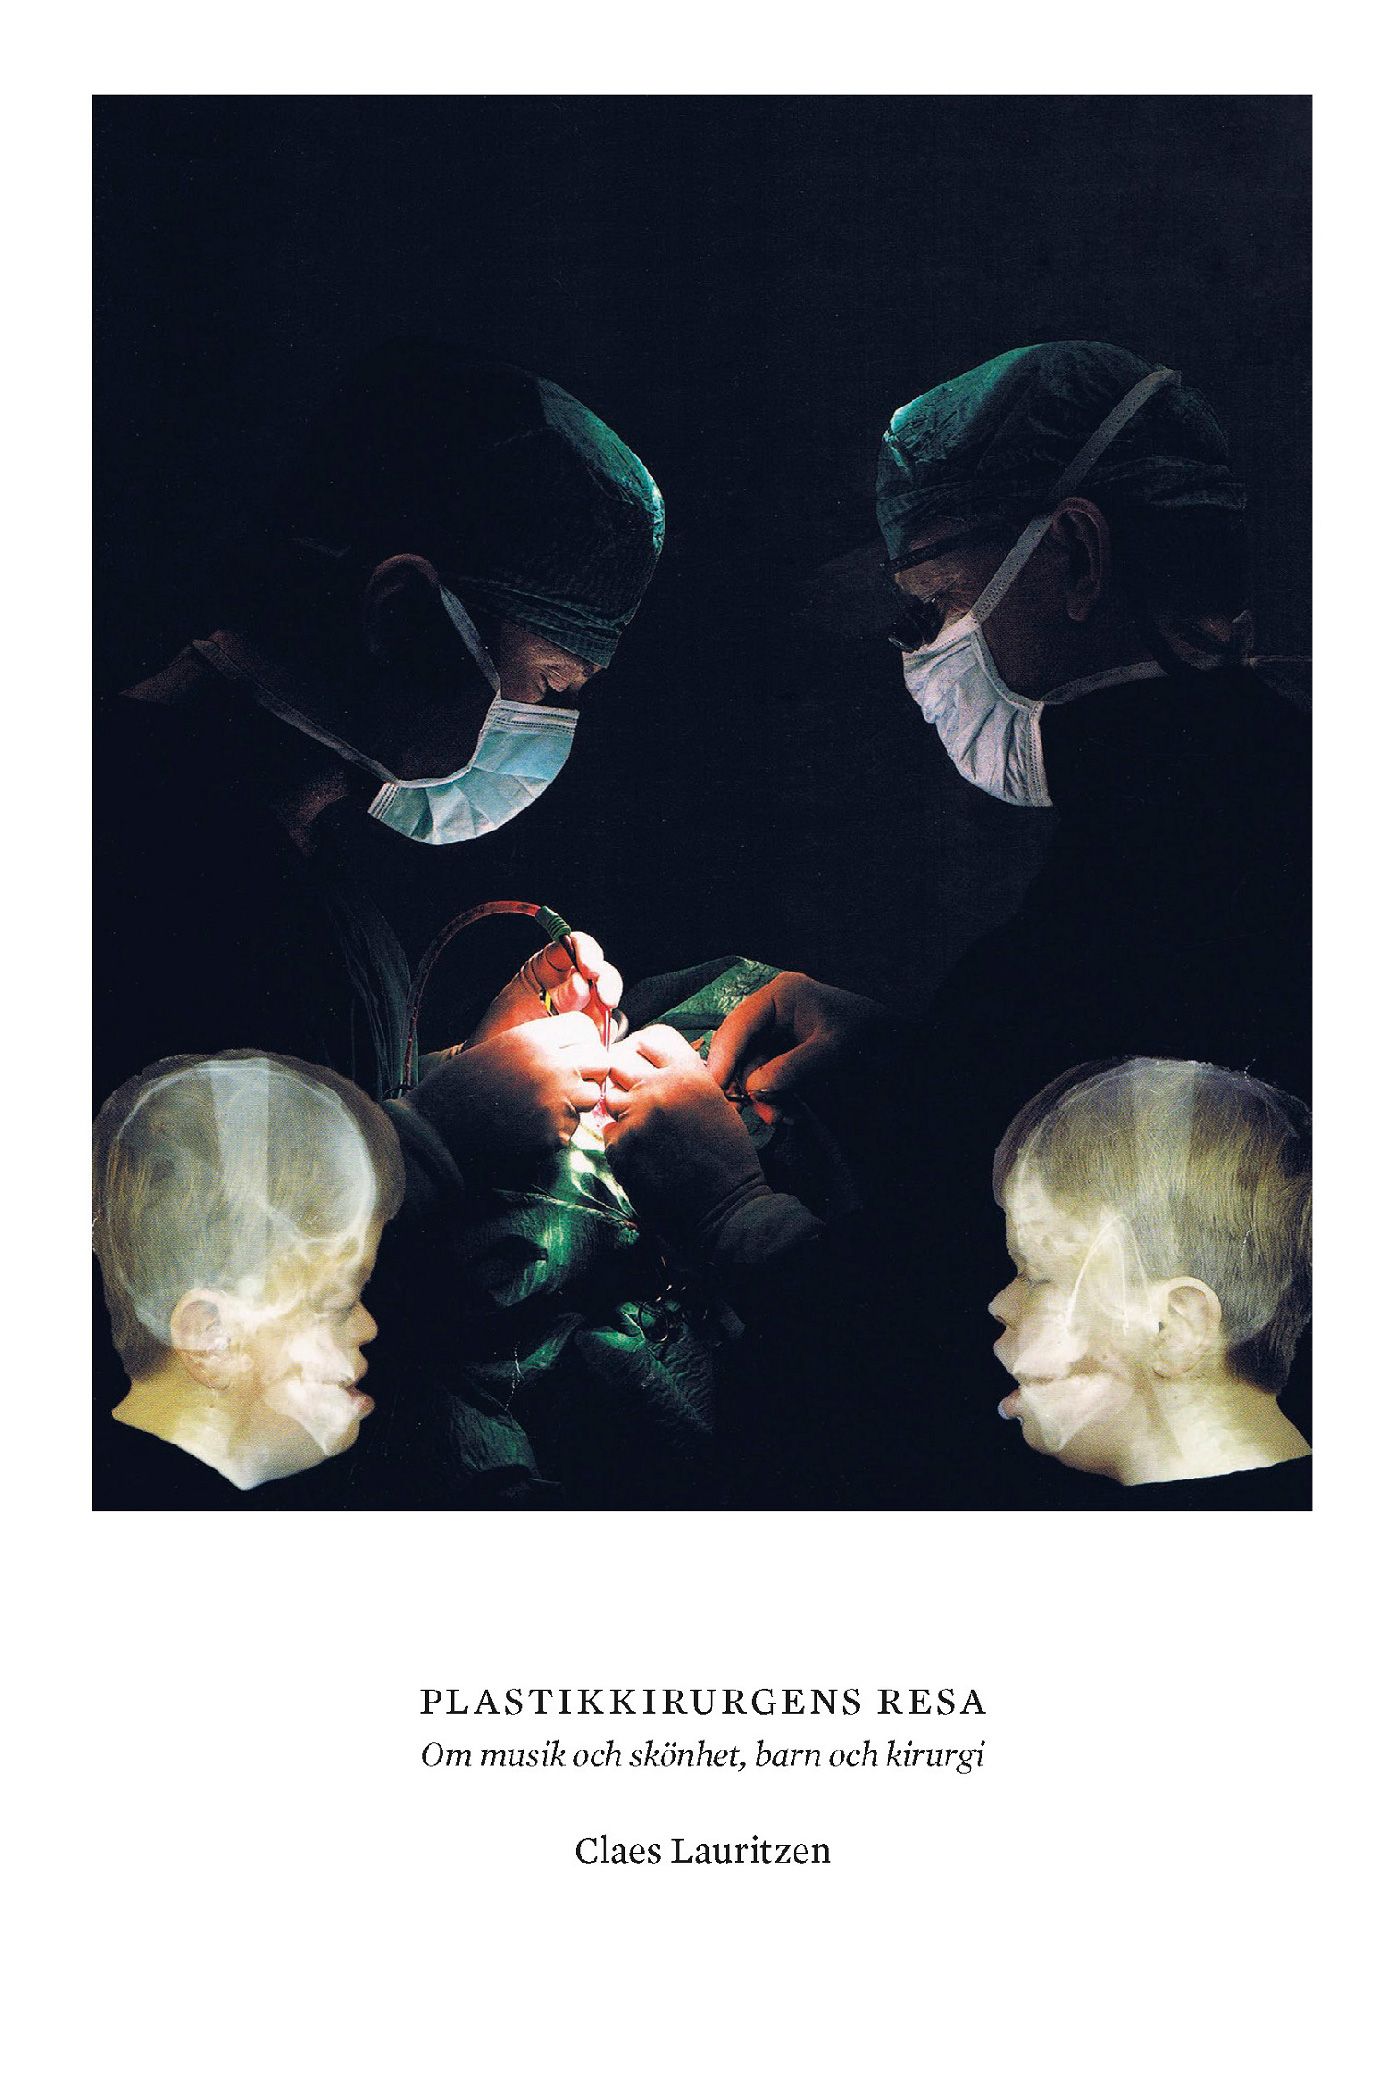 Plastikkirurgens resa. Om musik och skönhet, barn och kirurgi, e-bok av Claes Lauritzen